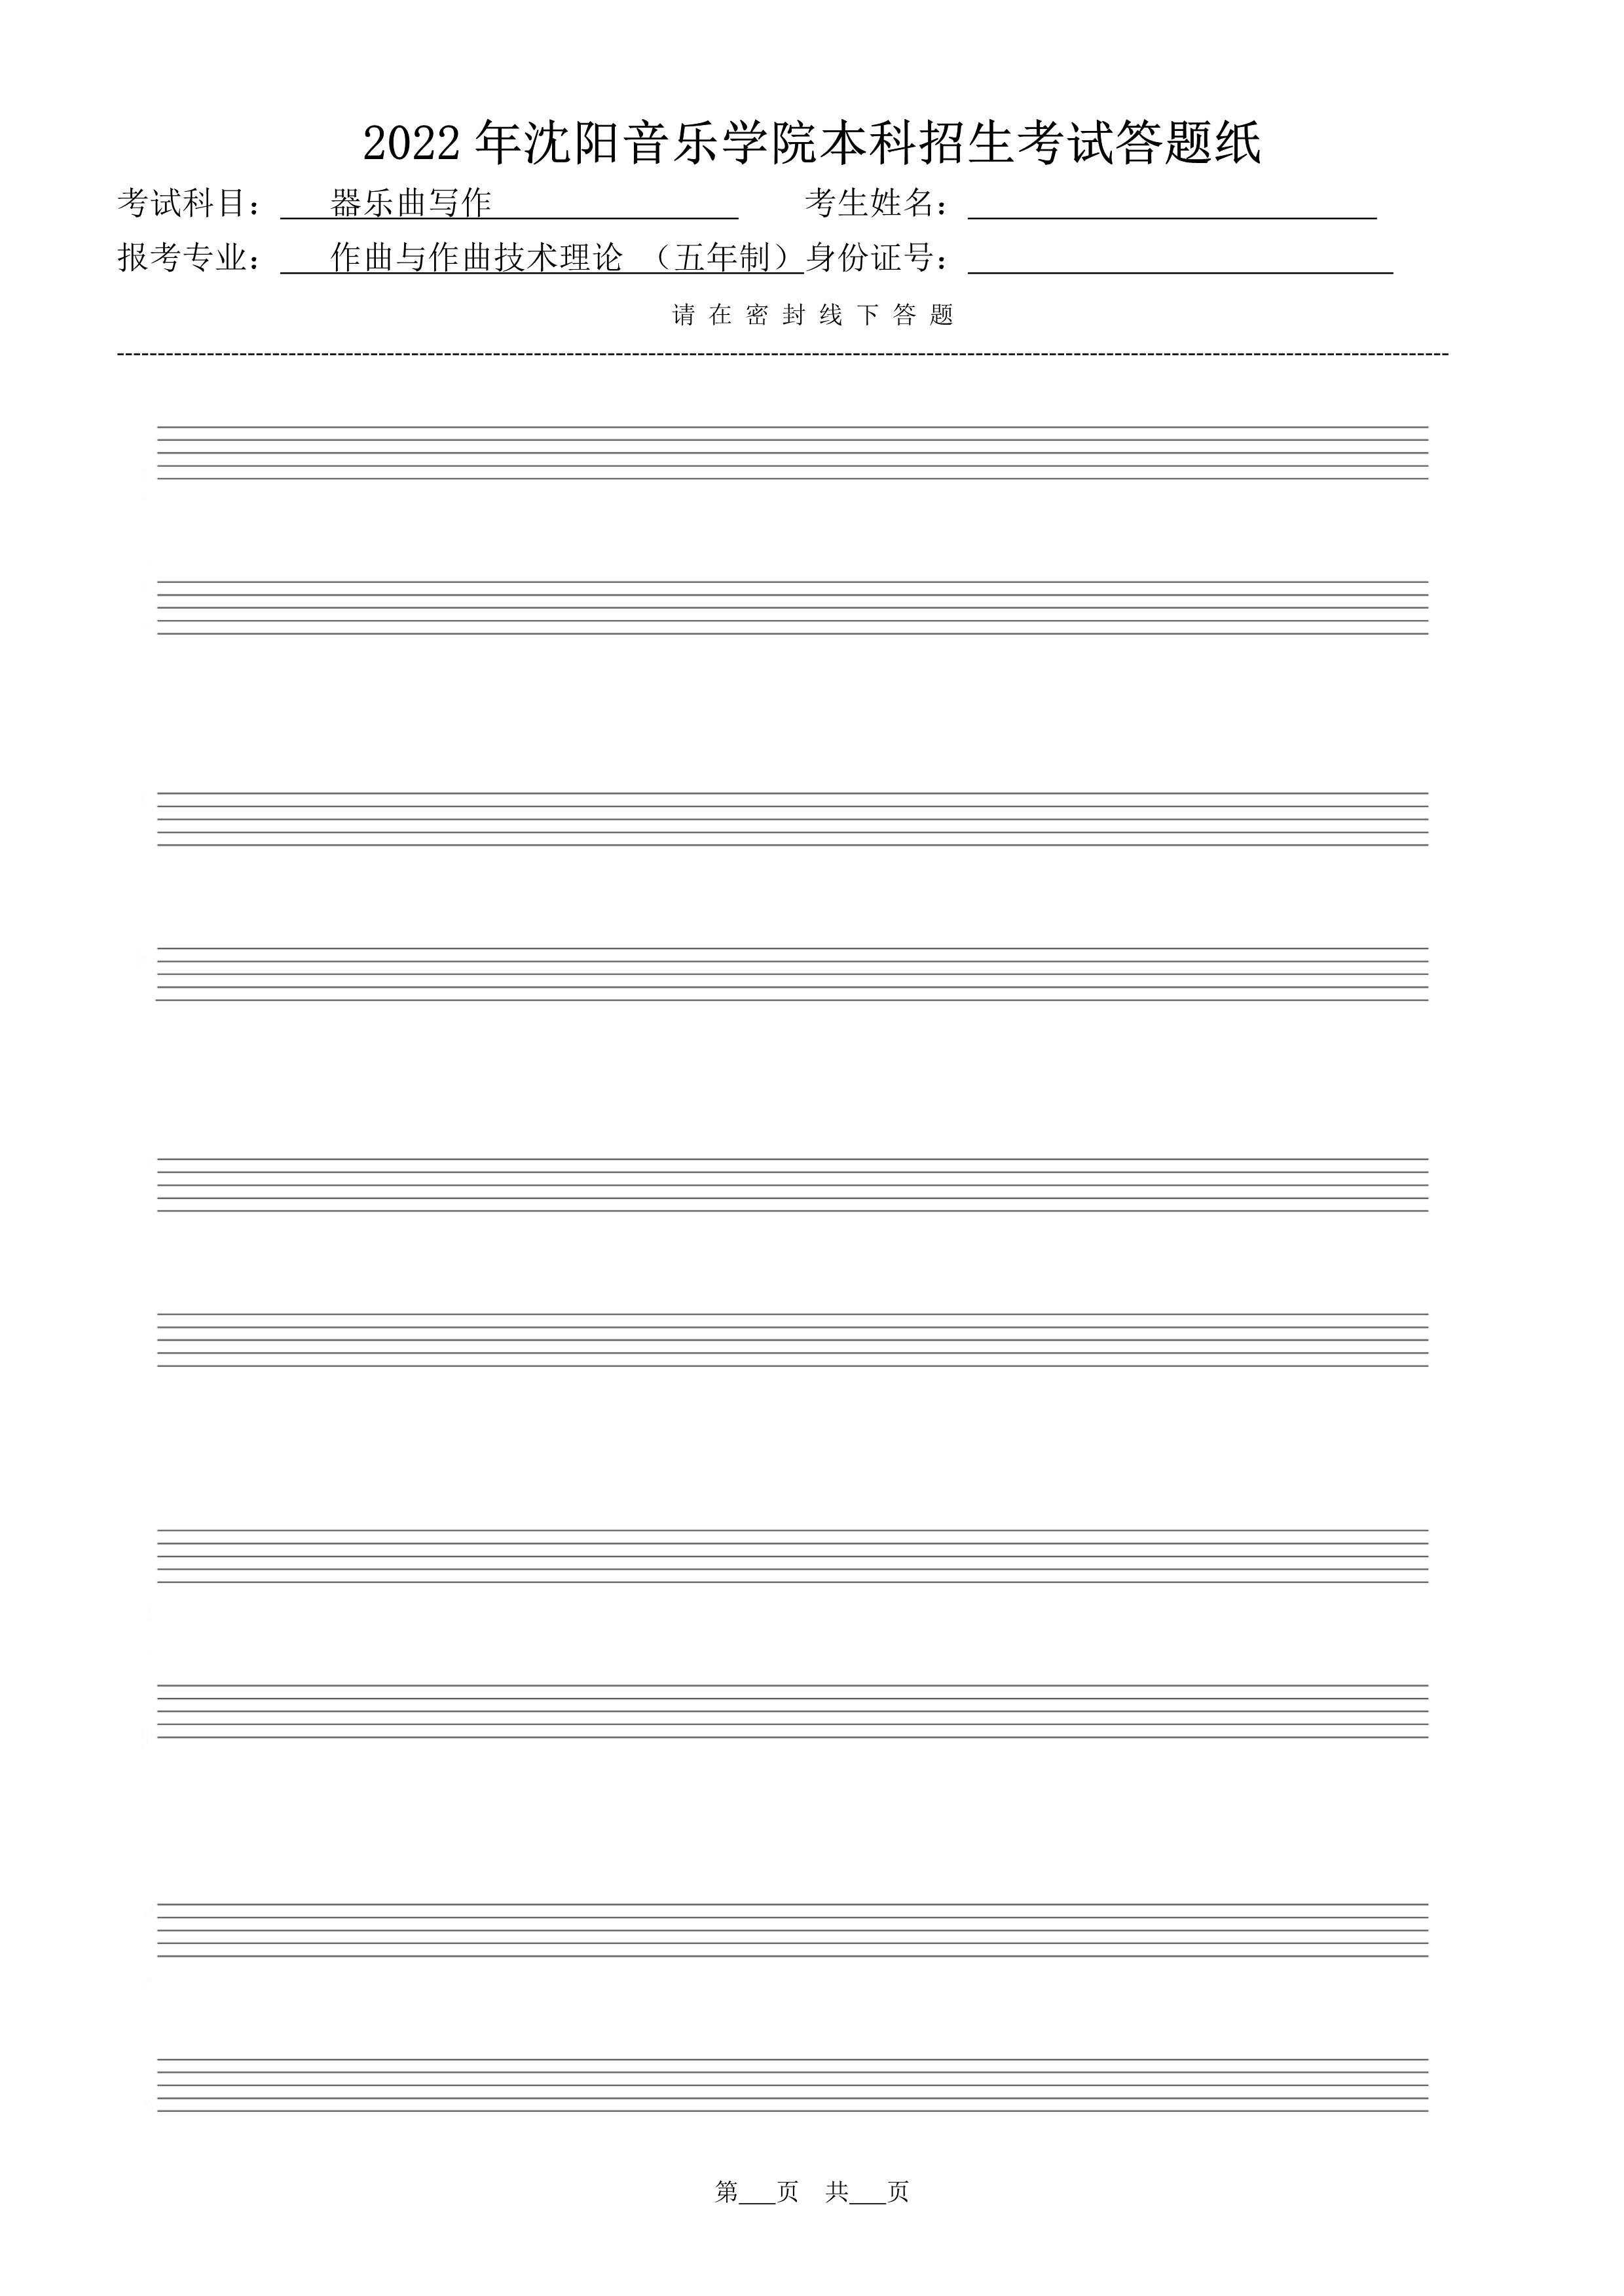 复试器乐曲写作答题纸（共10张）_10.jpg